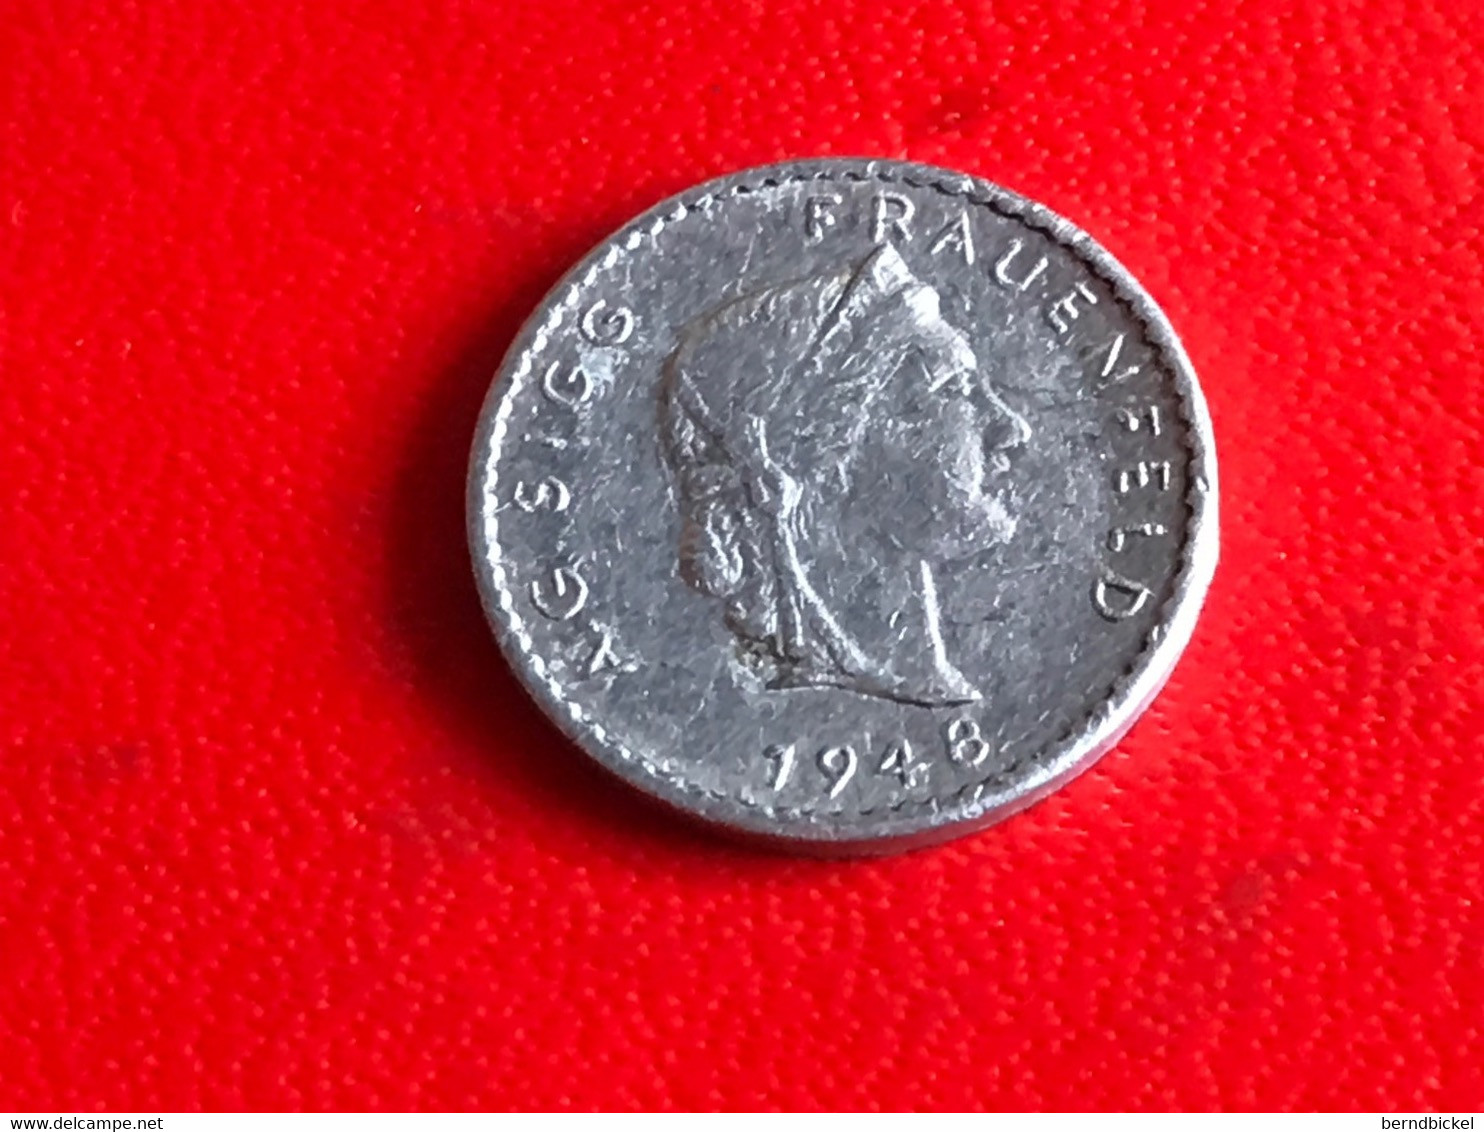 AG Sigg Frauenfeld Schweiz 1948 " 10 " - Elongated Coins